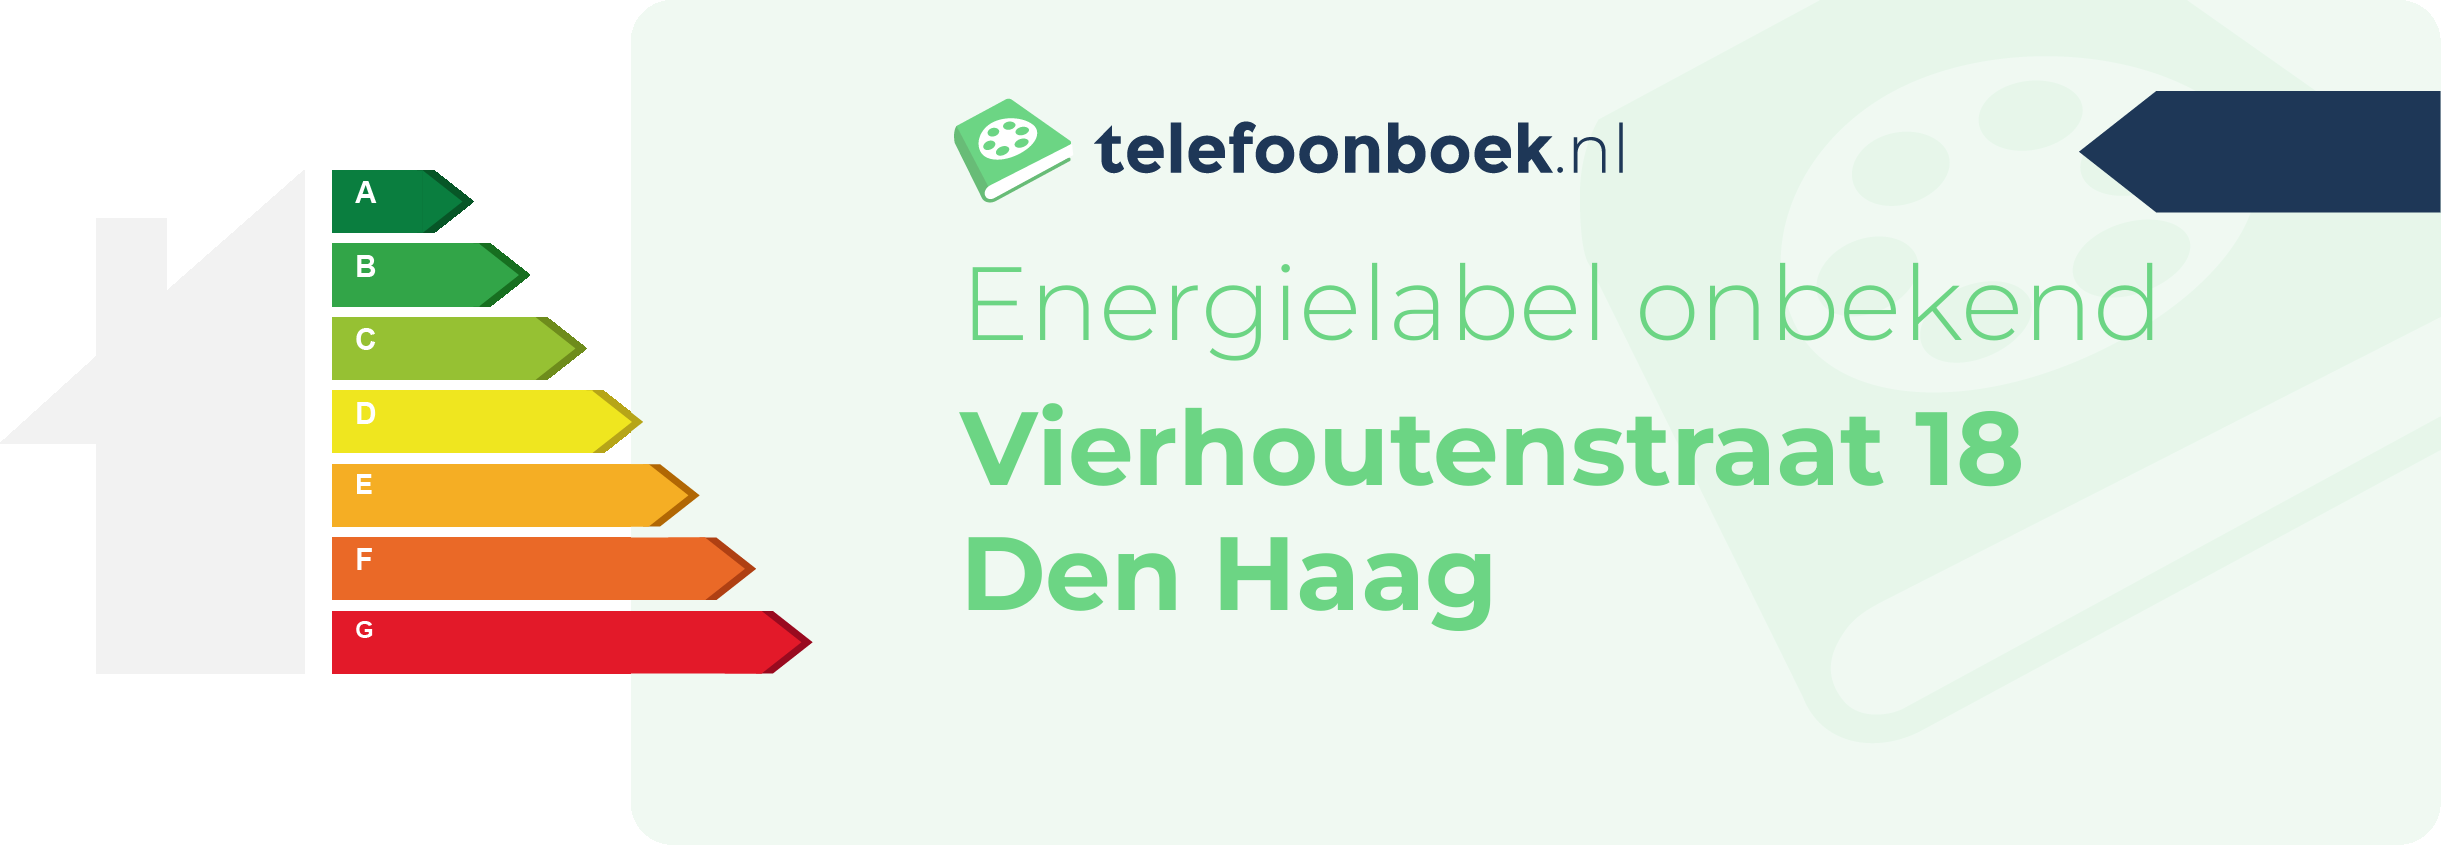 Energielabel Vierhoutenstraat 18 Den Haag